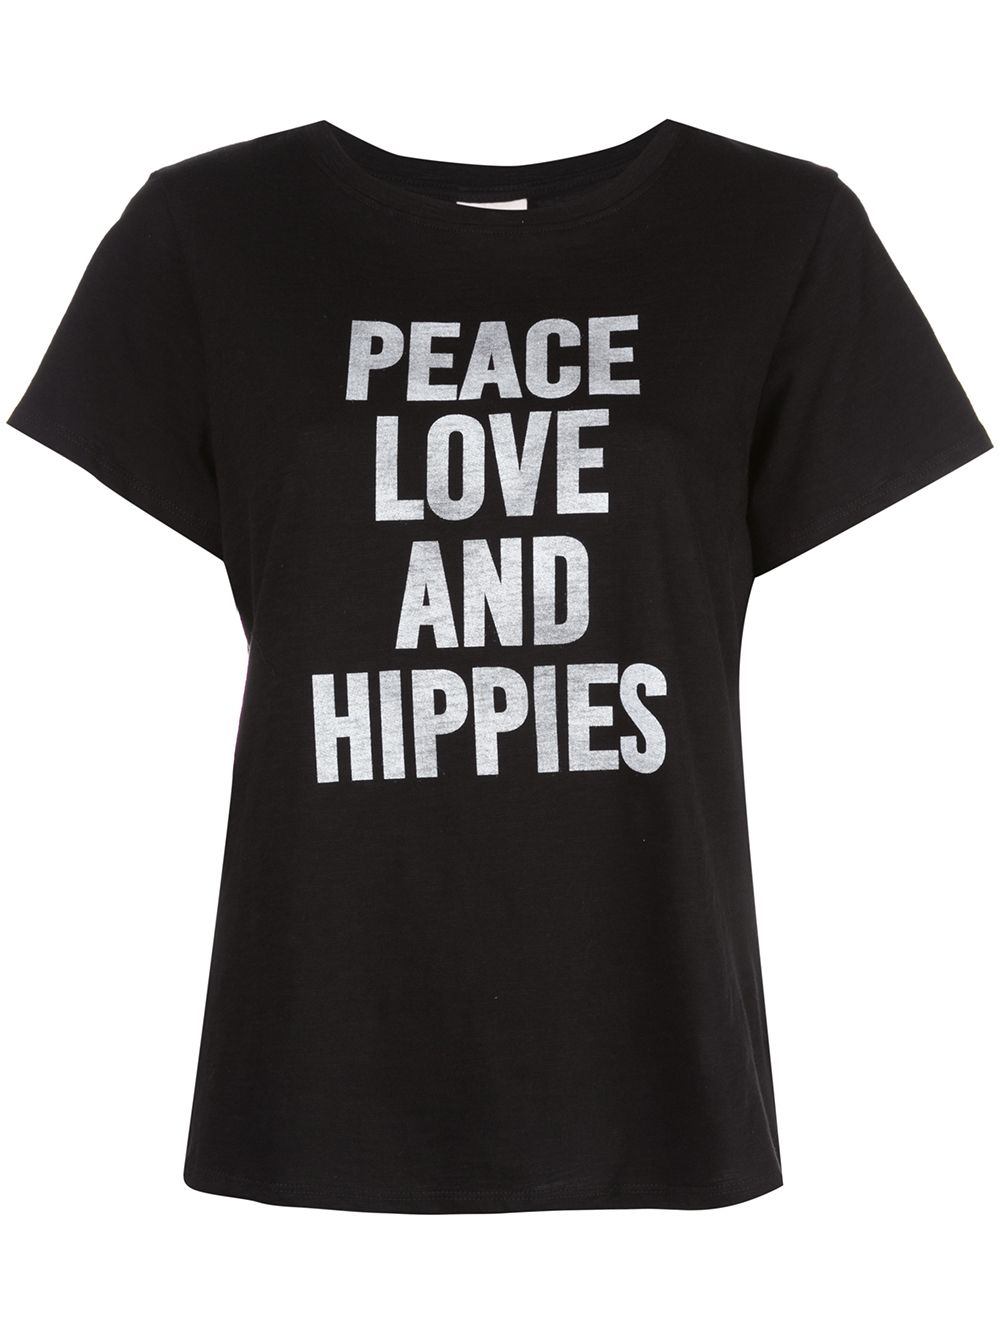 CINQ À SEPT PEACE LOVE HIPPIES T-SHIRT